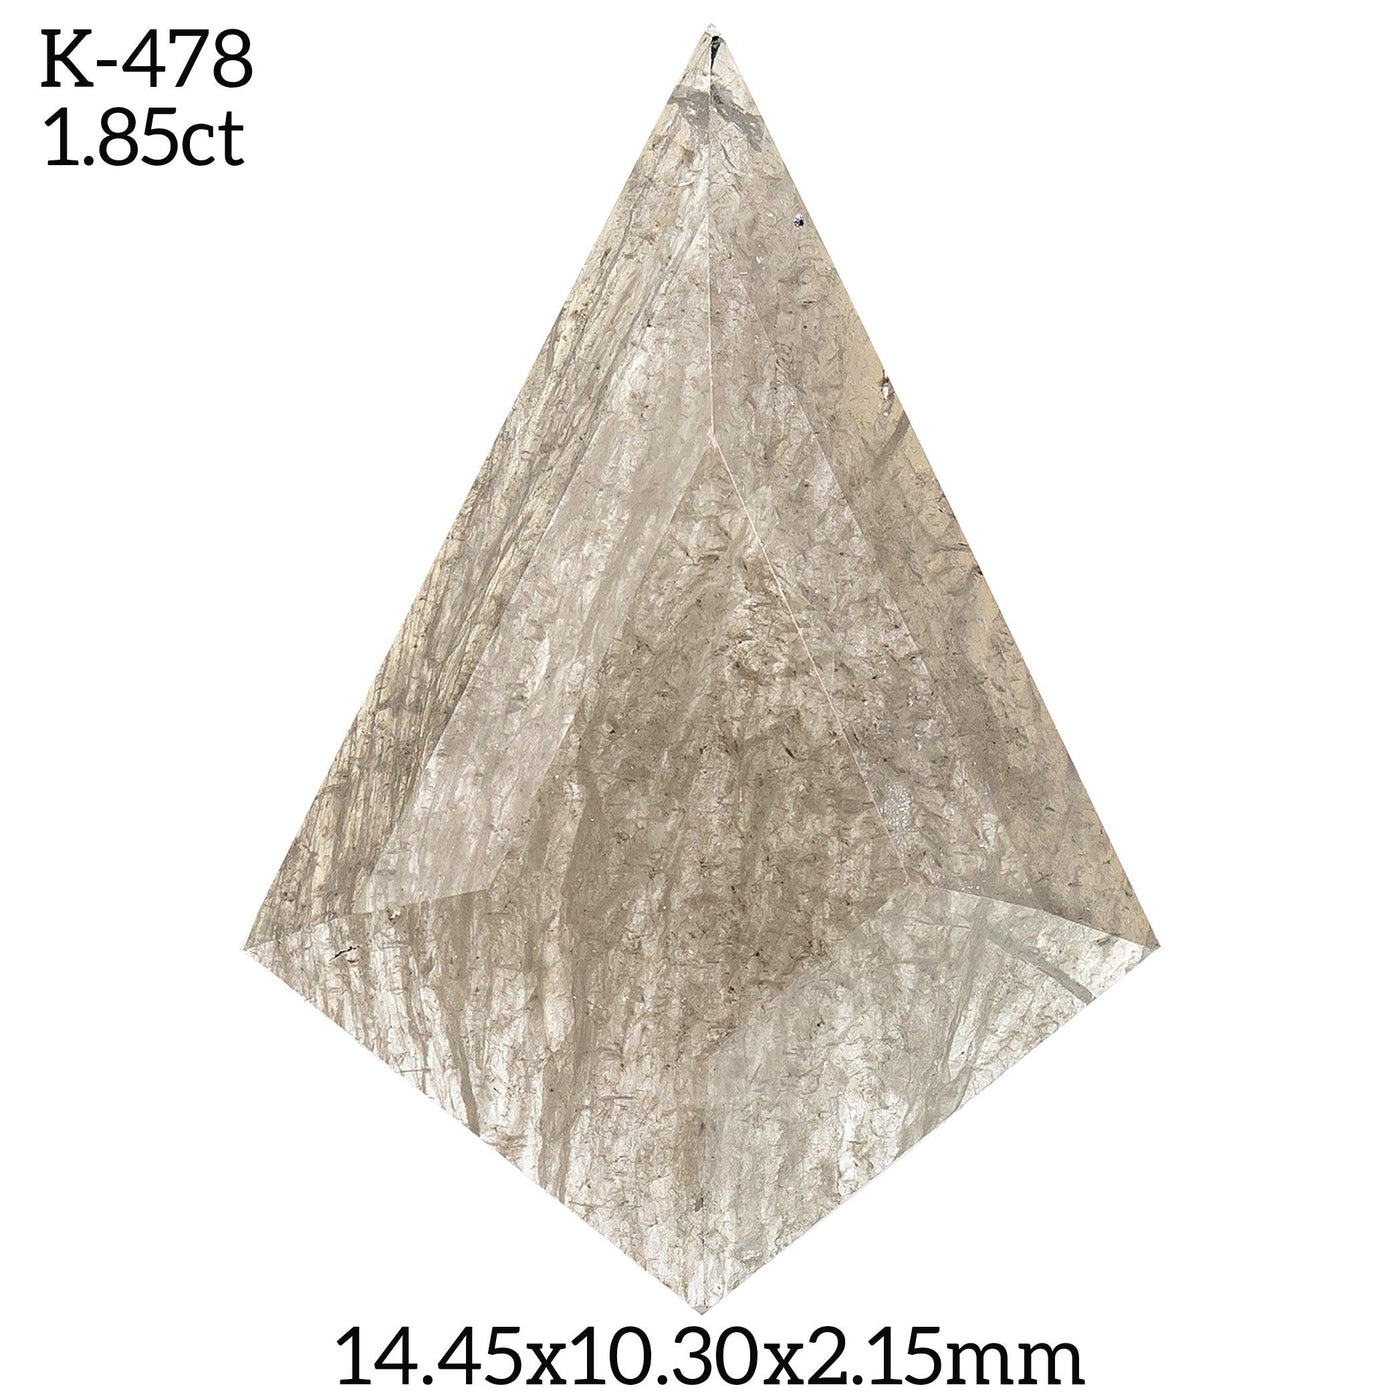 K478 - Salt and pepper kite diamond